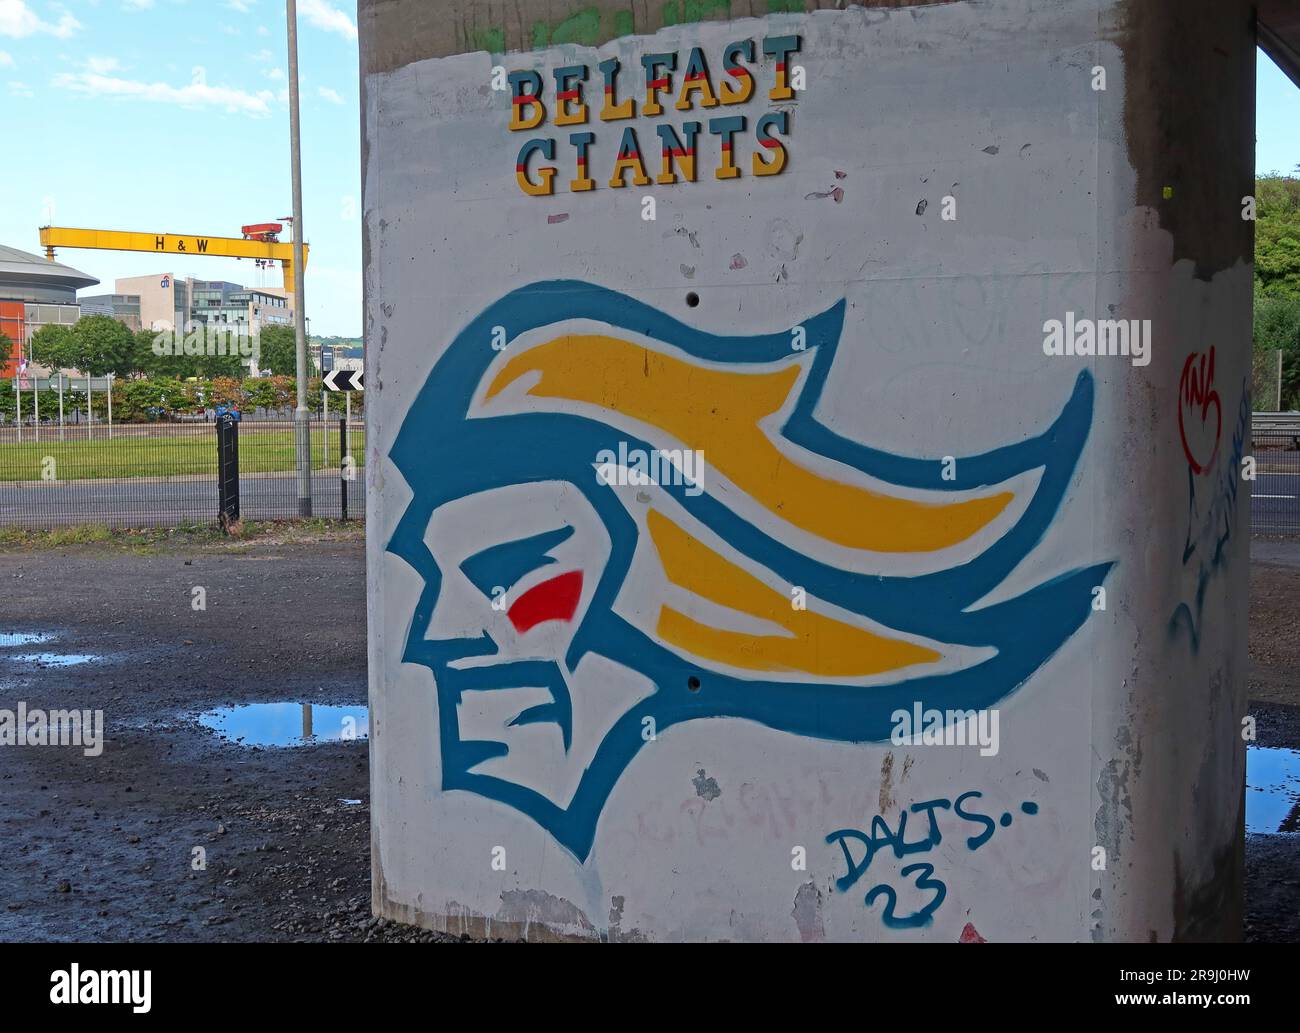 Graffiti Belfast Giants de Dalts 23, au bord de la rivière, dans le quartier Titanic, à proximité des grues H&W Harland & Wolff Samson et Goliath & SSE Arena Banque D'Images